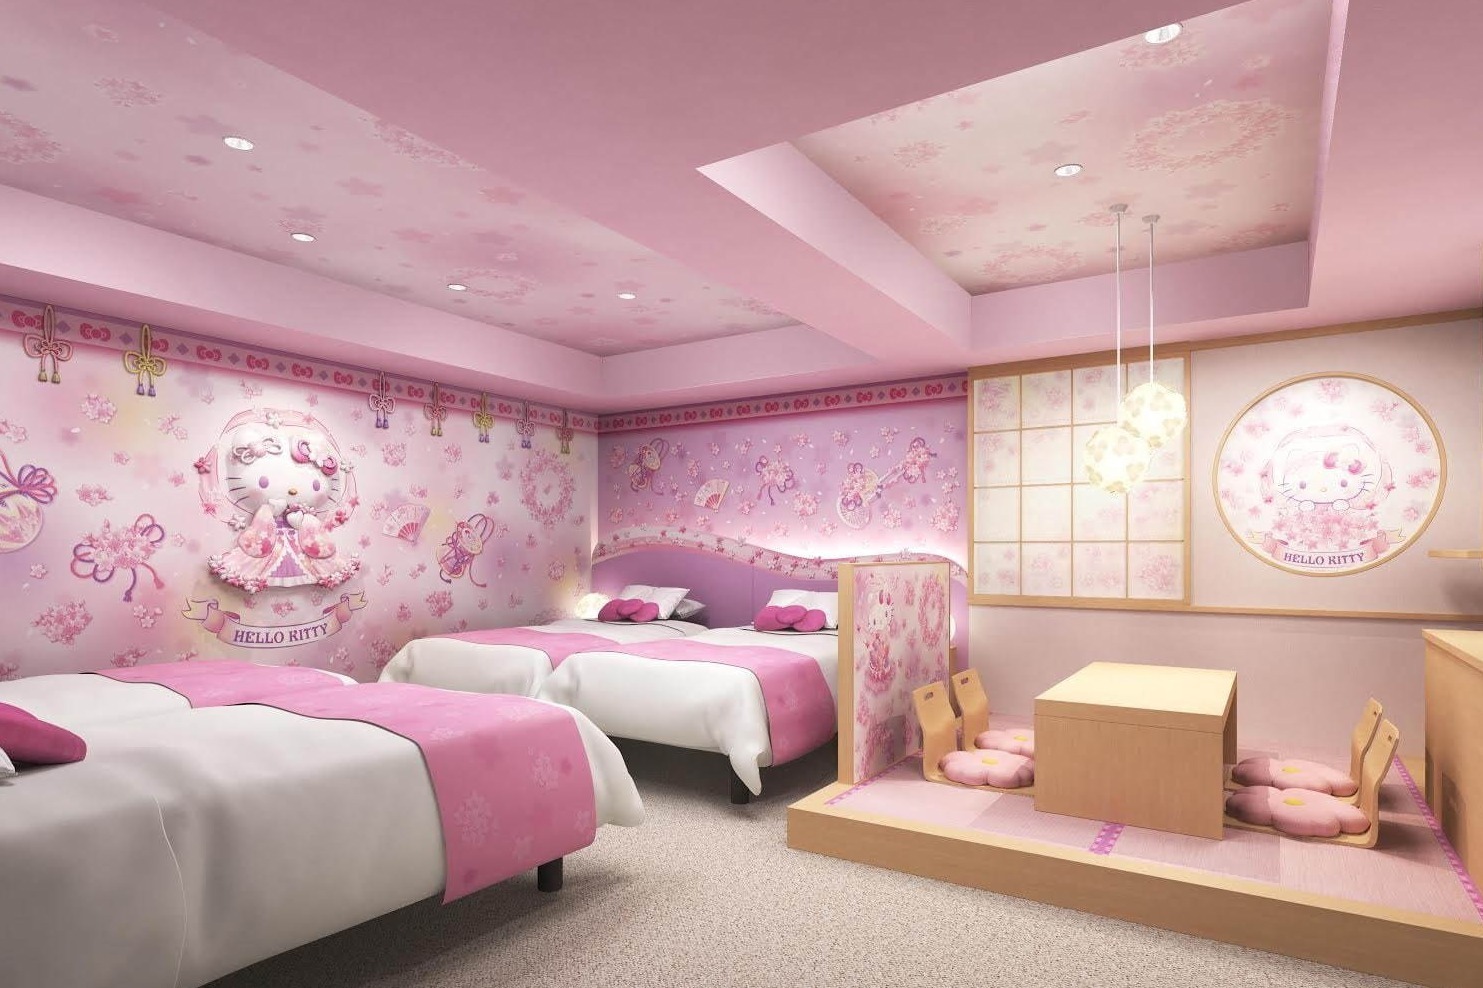 浅草東武ホテルに ハローキティルーム 誕生 桜天女と和モダン 異なる2タイプの客室 ファッションプレス